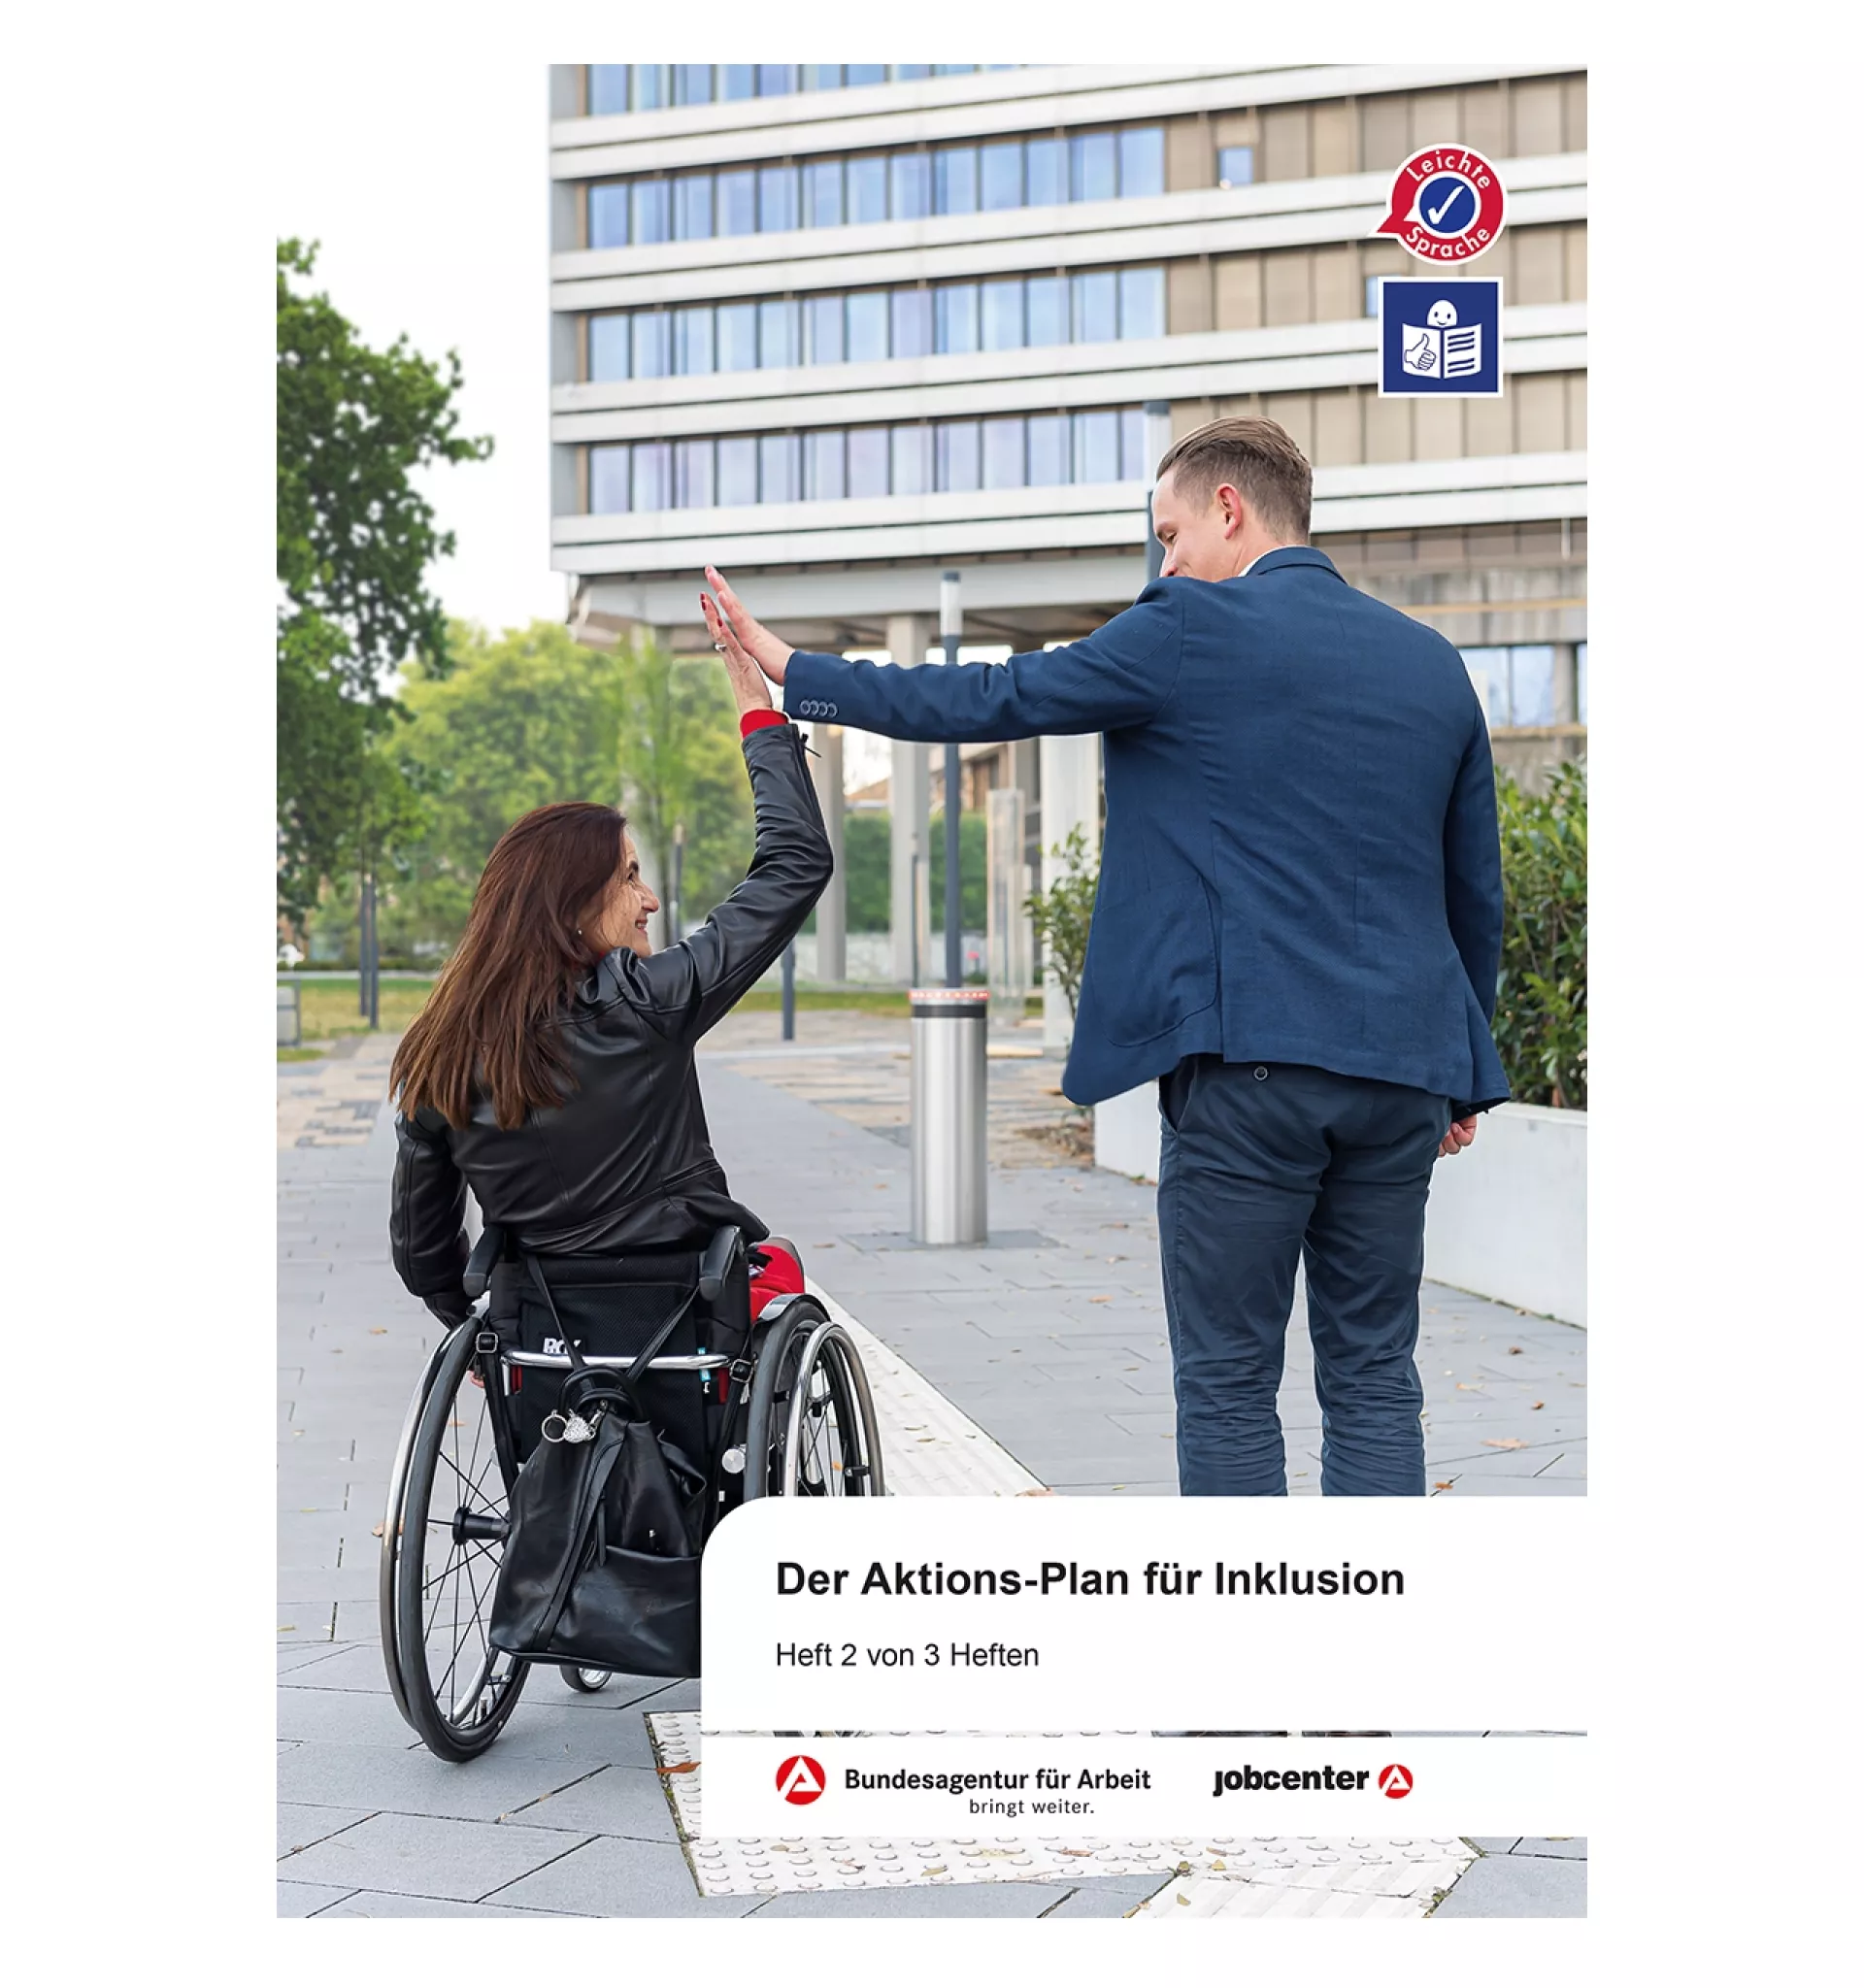 Bild von stehendem Mann und Frau im Rollstuhl die sich die Hand geben.